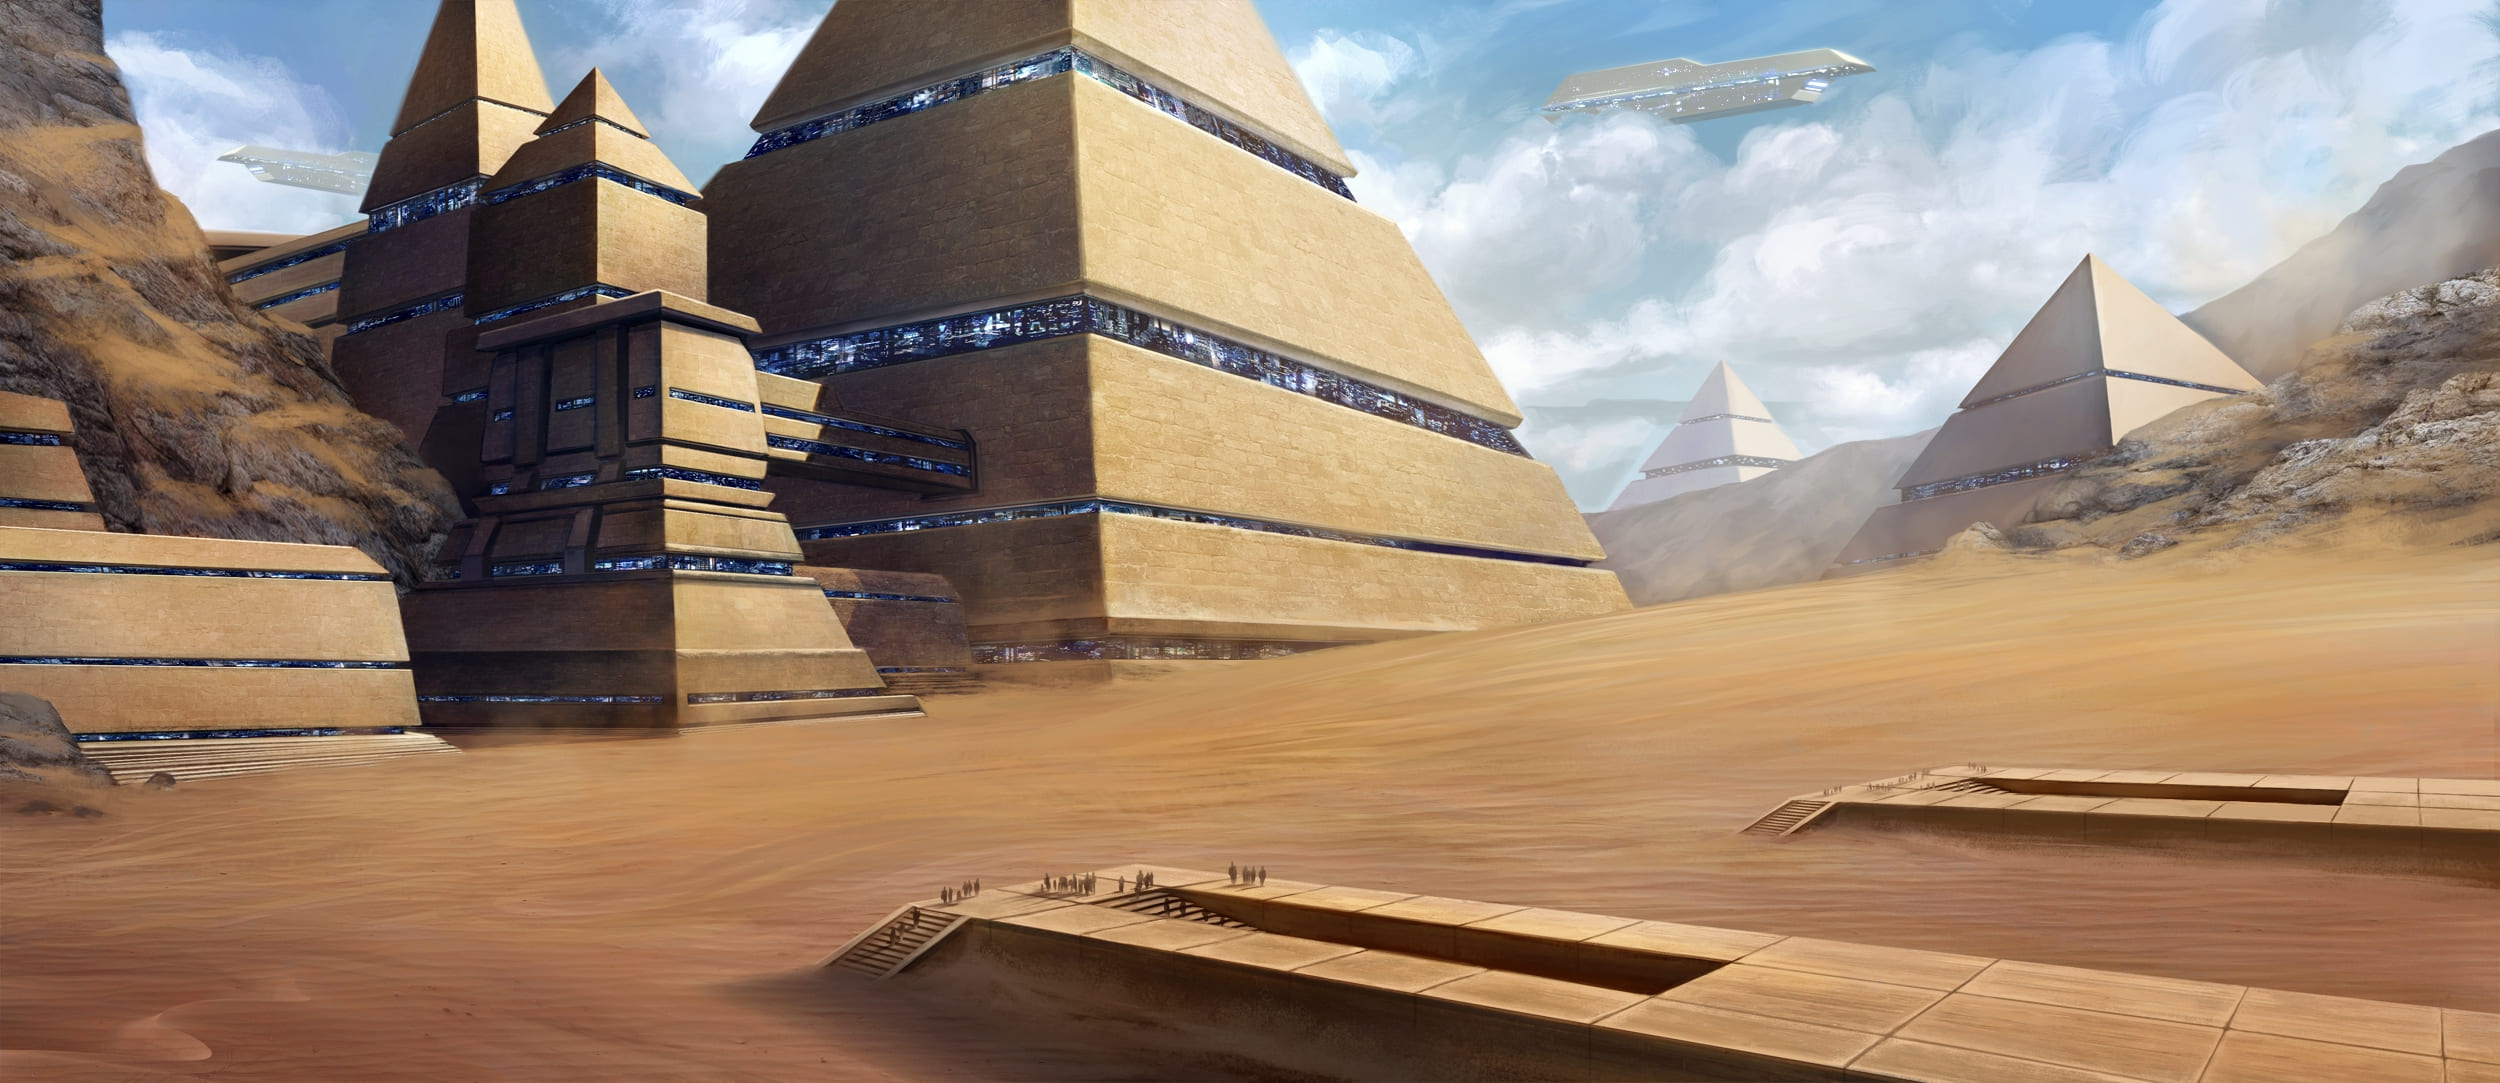 Пирамида Хабы и недостроенная пирамида Бака остатки цивилизации предков